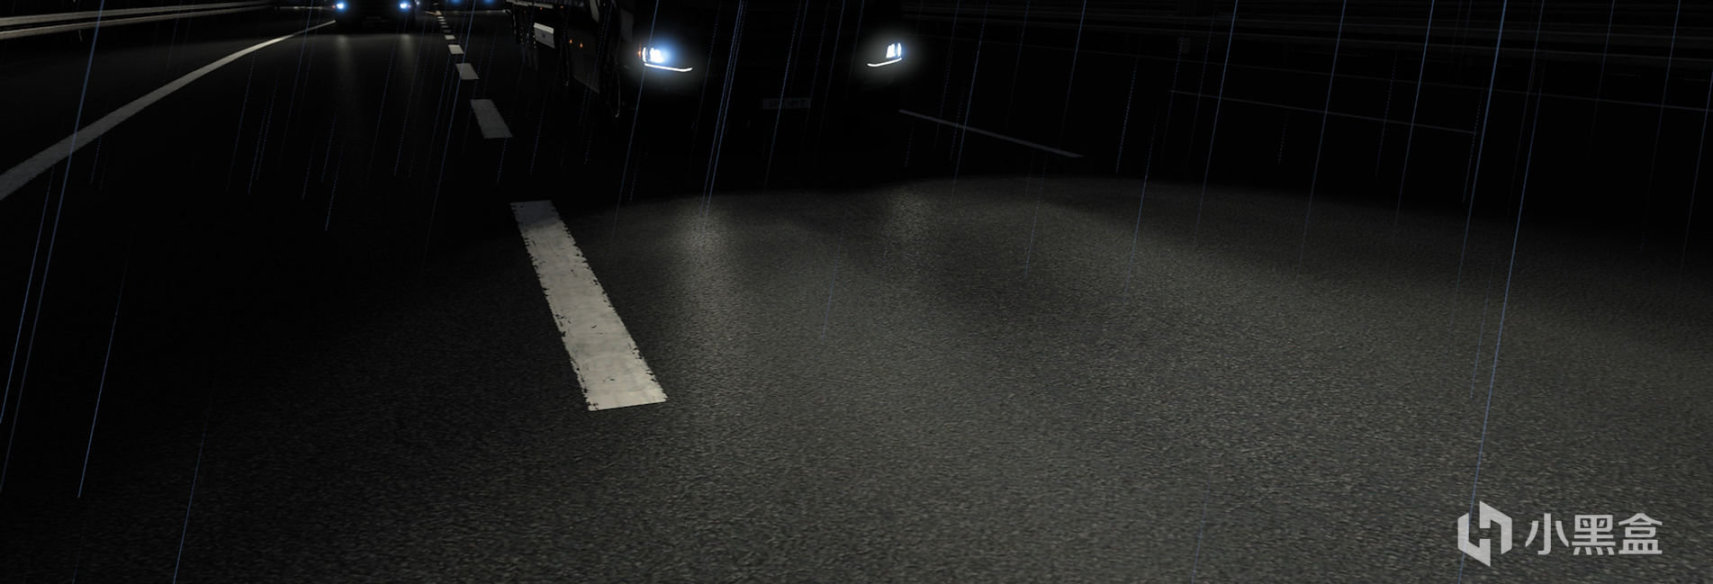 【歐洲卡車模擬2】MOD推薦【D.B Creation】D.B團隊的AI交通和其他遊戲內容模組-第24張